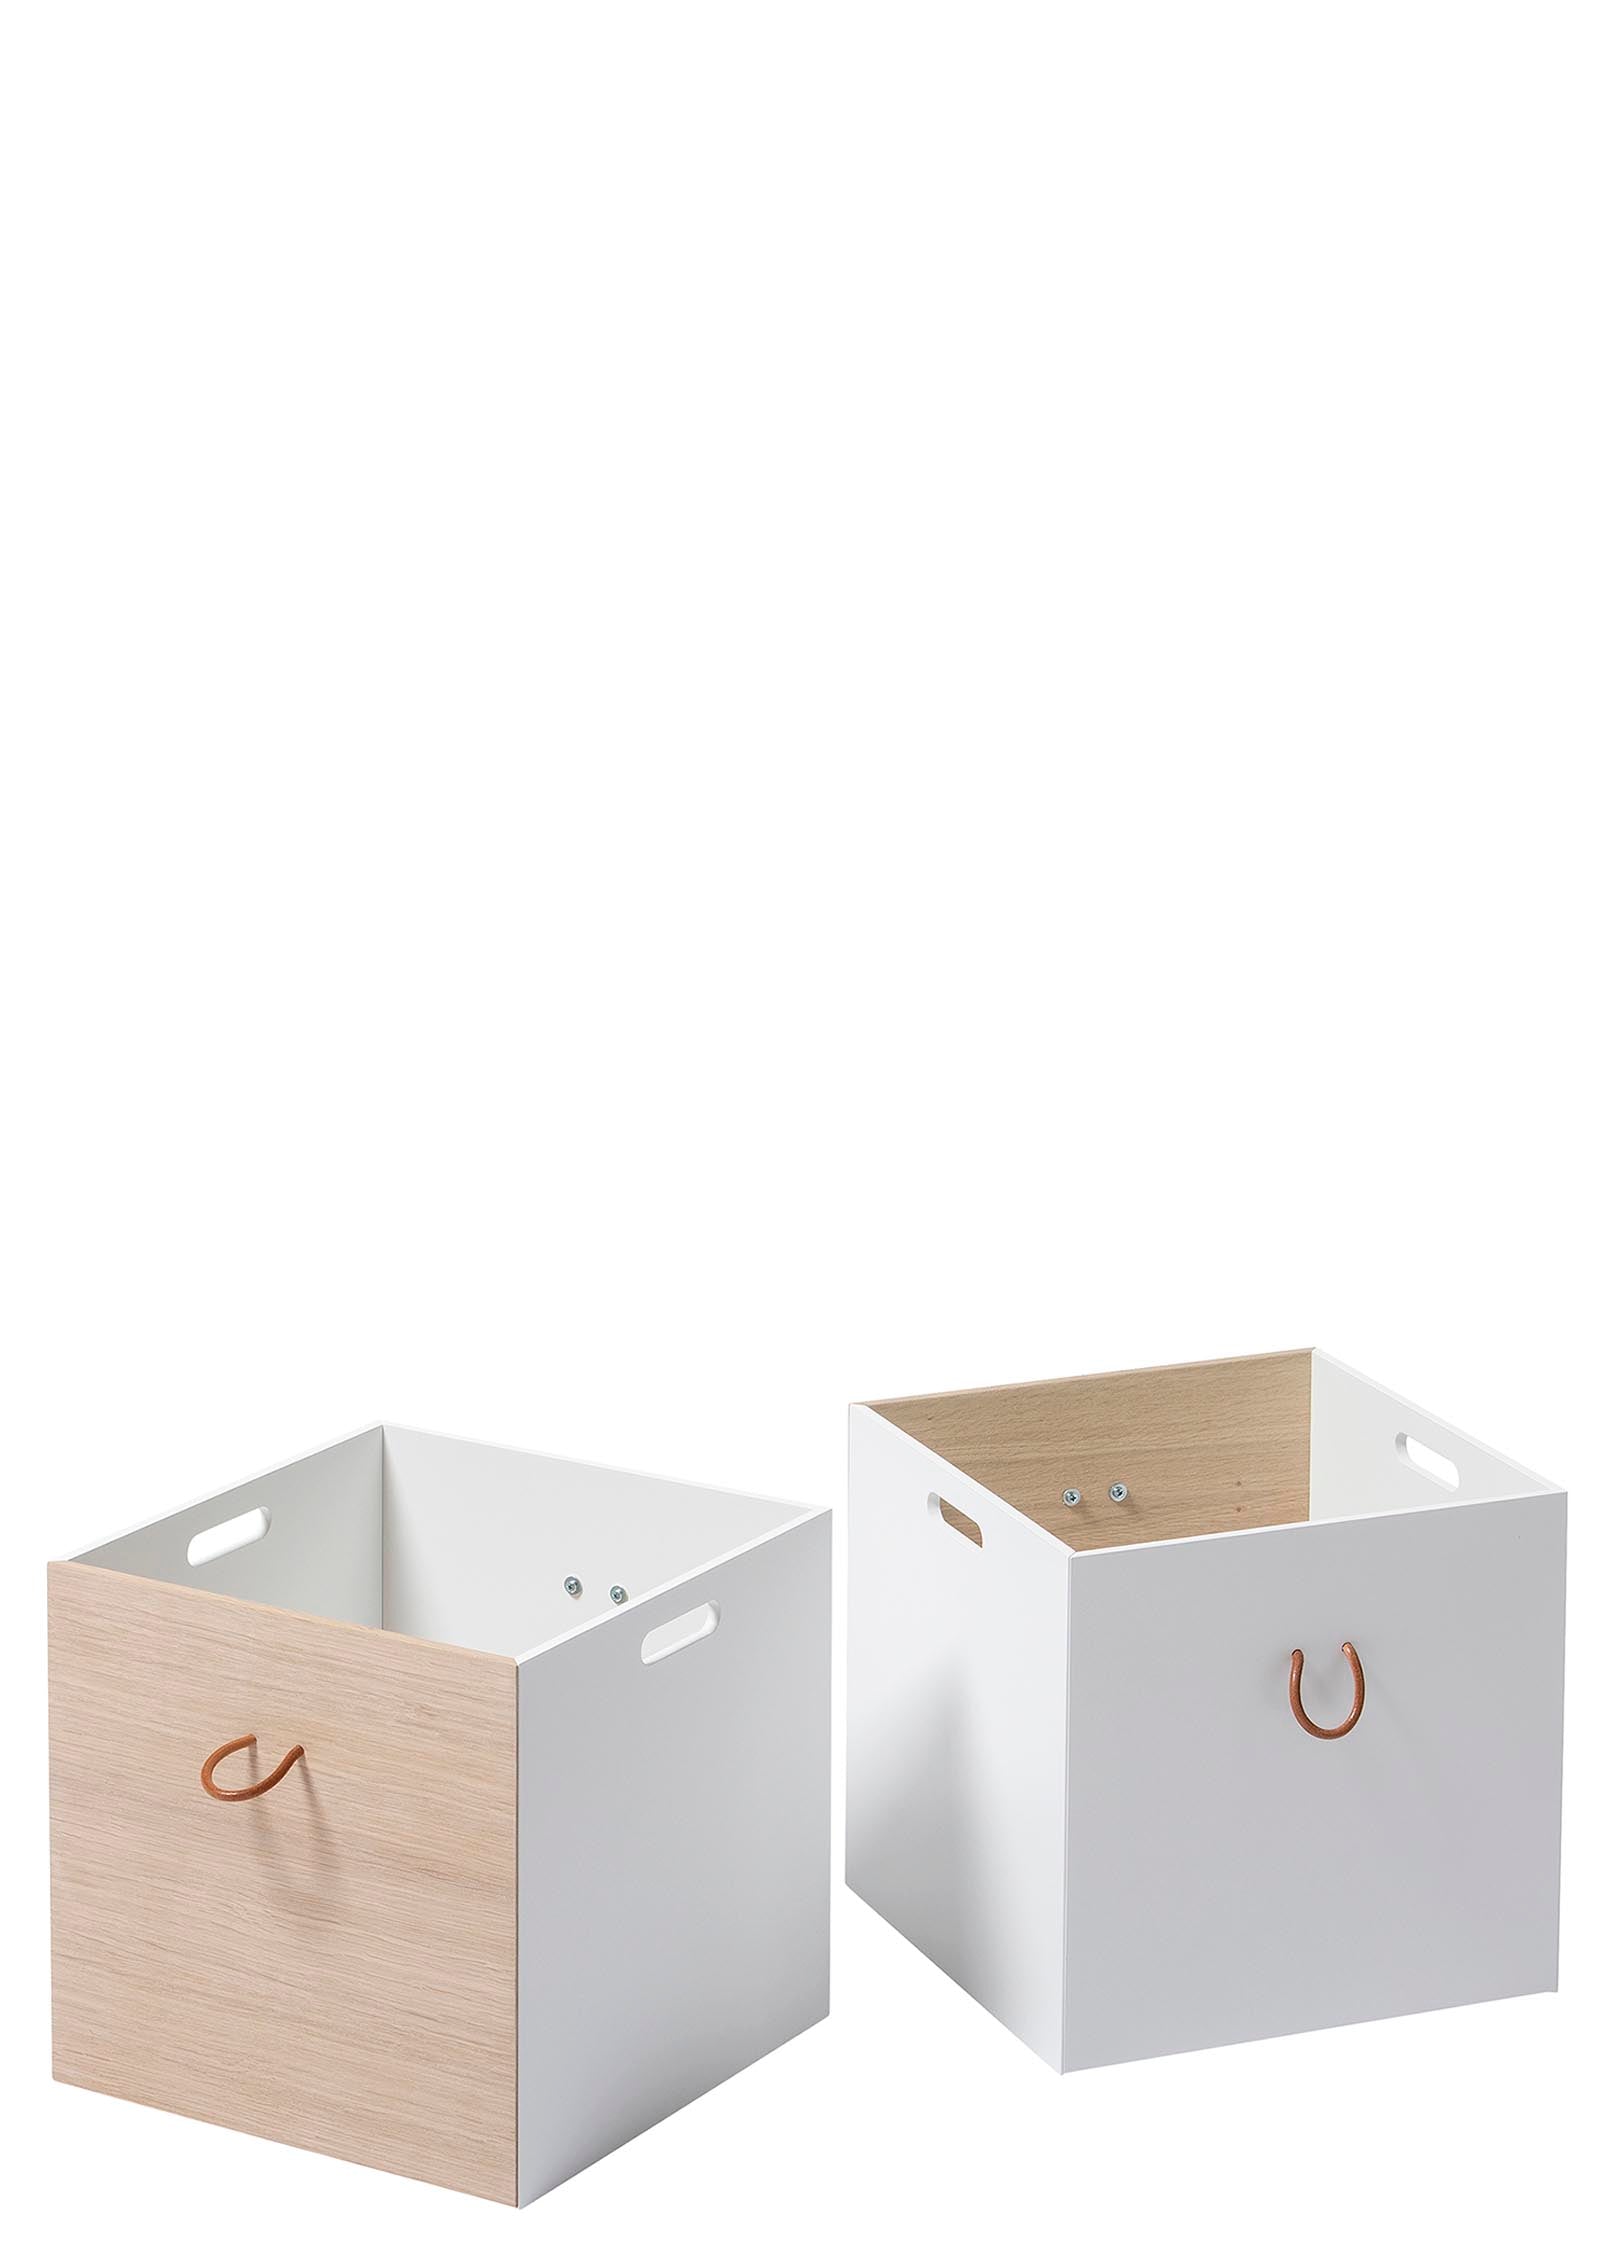 Oliver Furniture Wood Kisten weiß/eiche